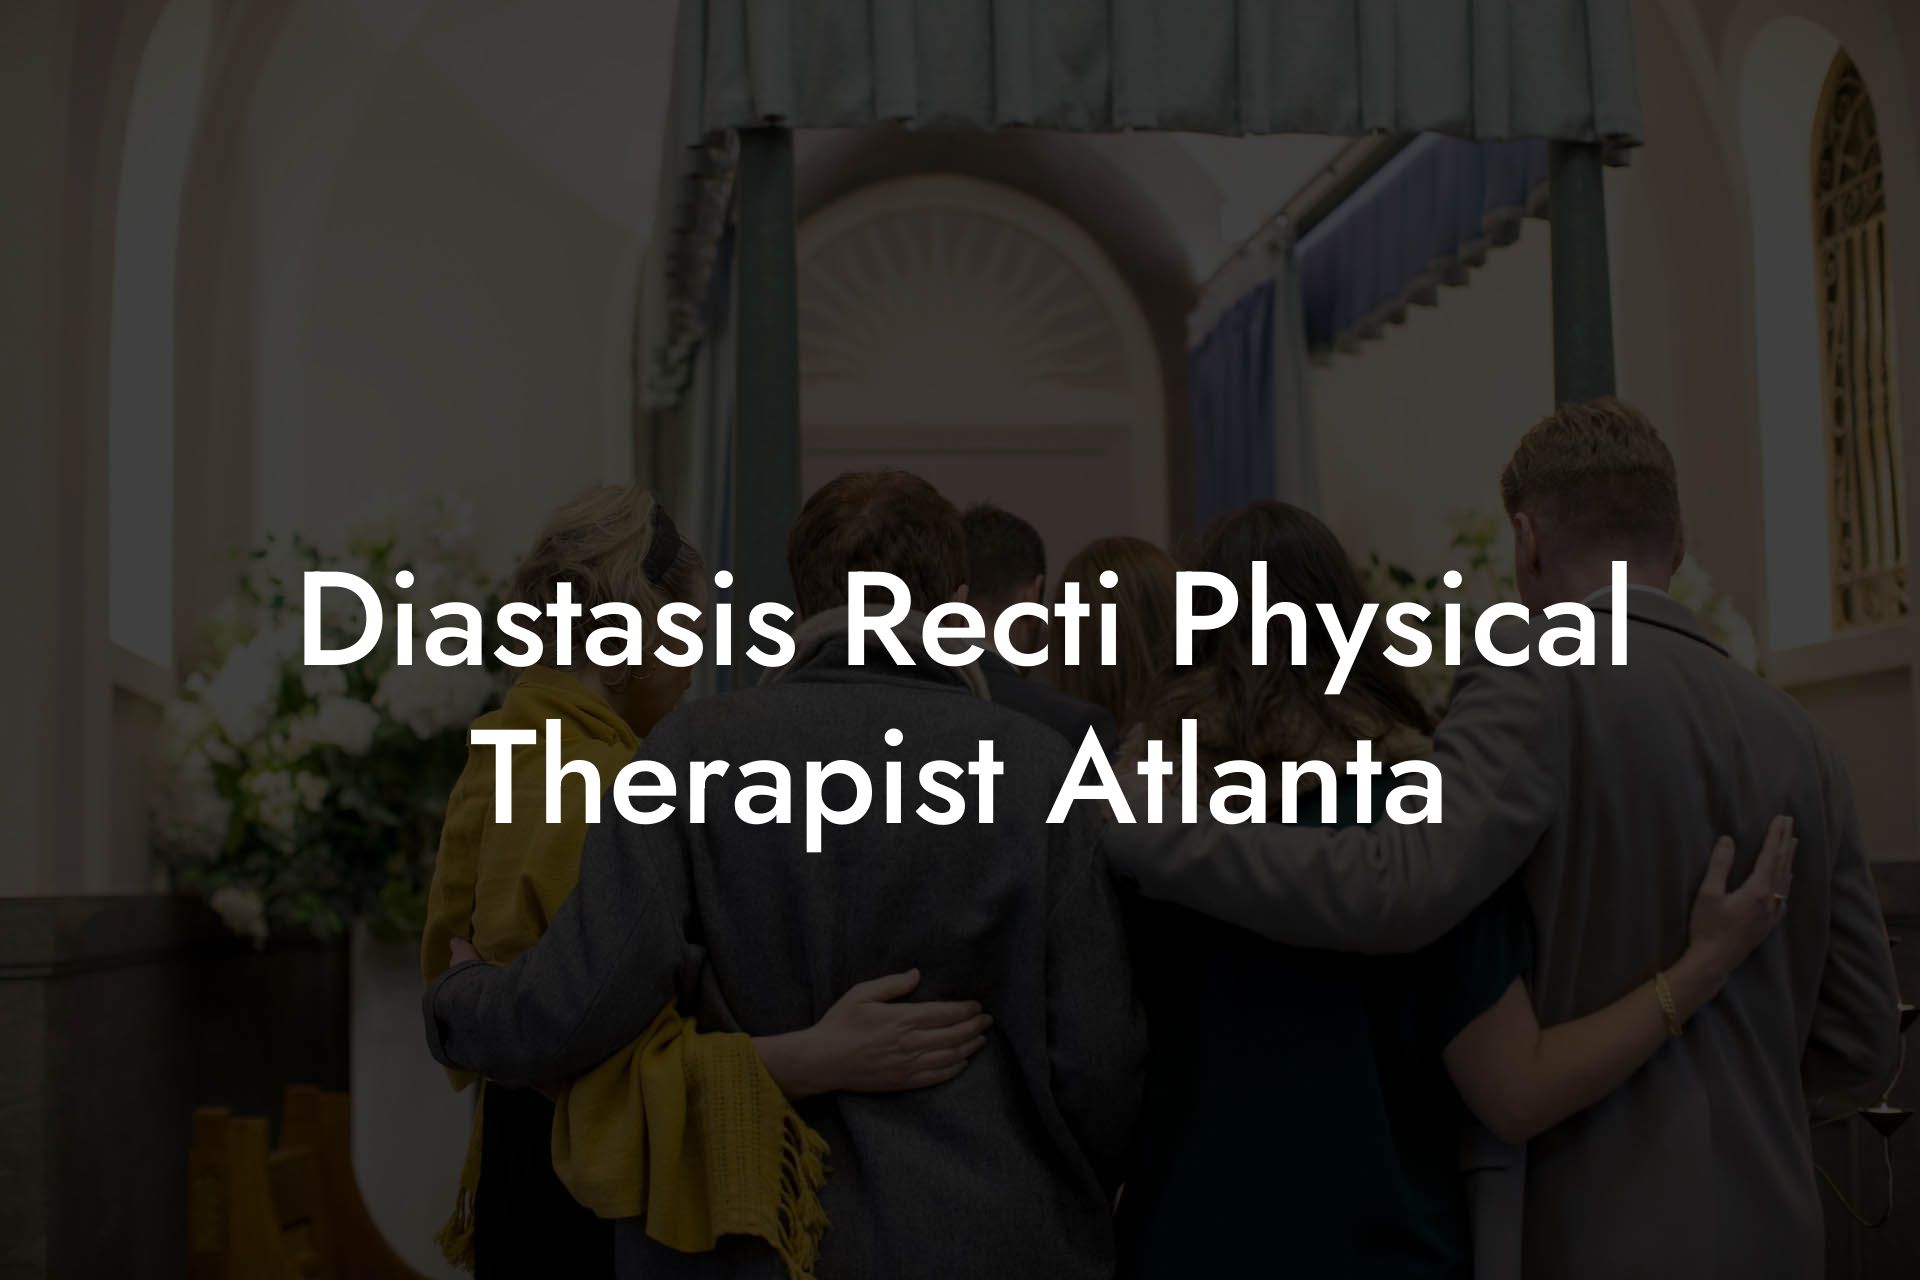 Diastasis Recti Physical Therapist Atlanta